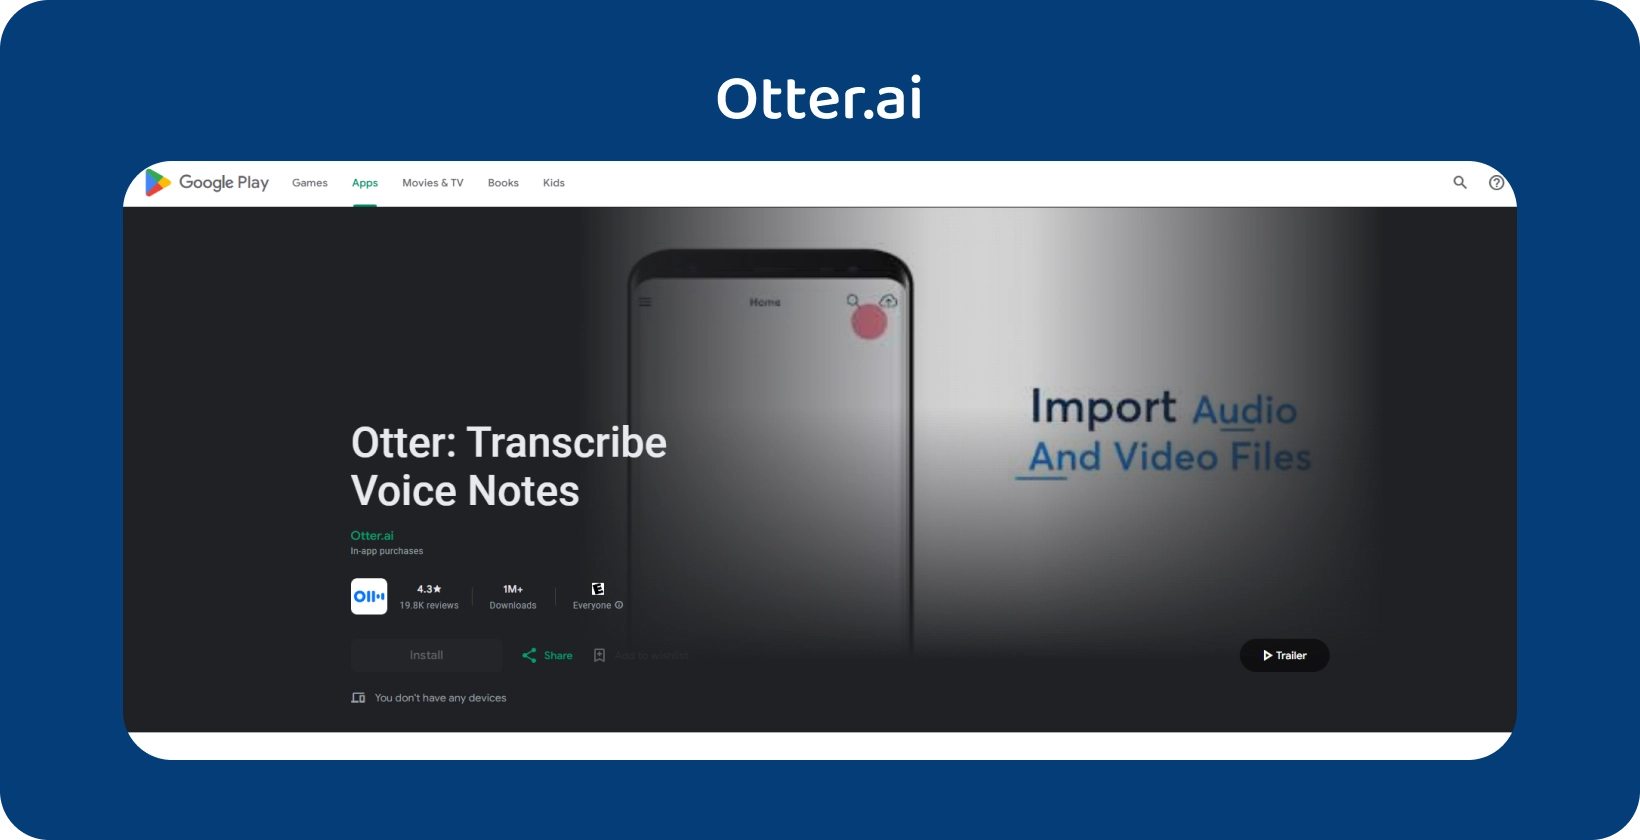 Otter.ai aplikacija v Google Play z zmogljivostmi prepisovanja glasovnih zapiskov in uvoza zvočnih/video datotek.